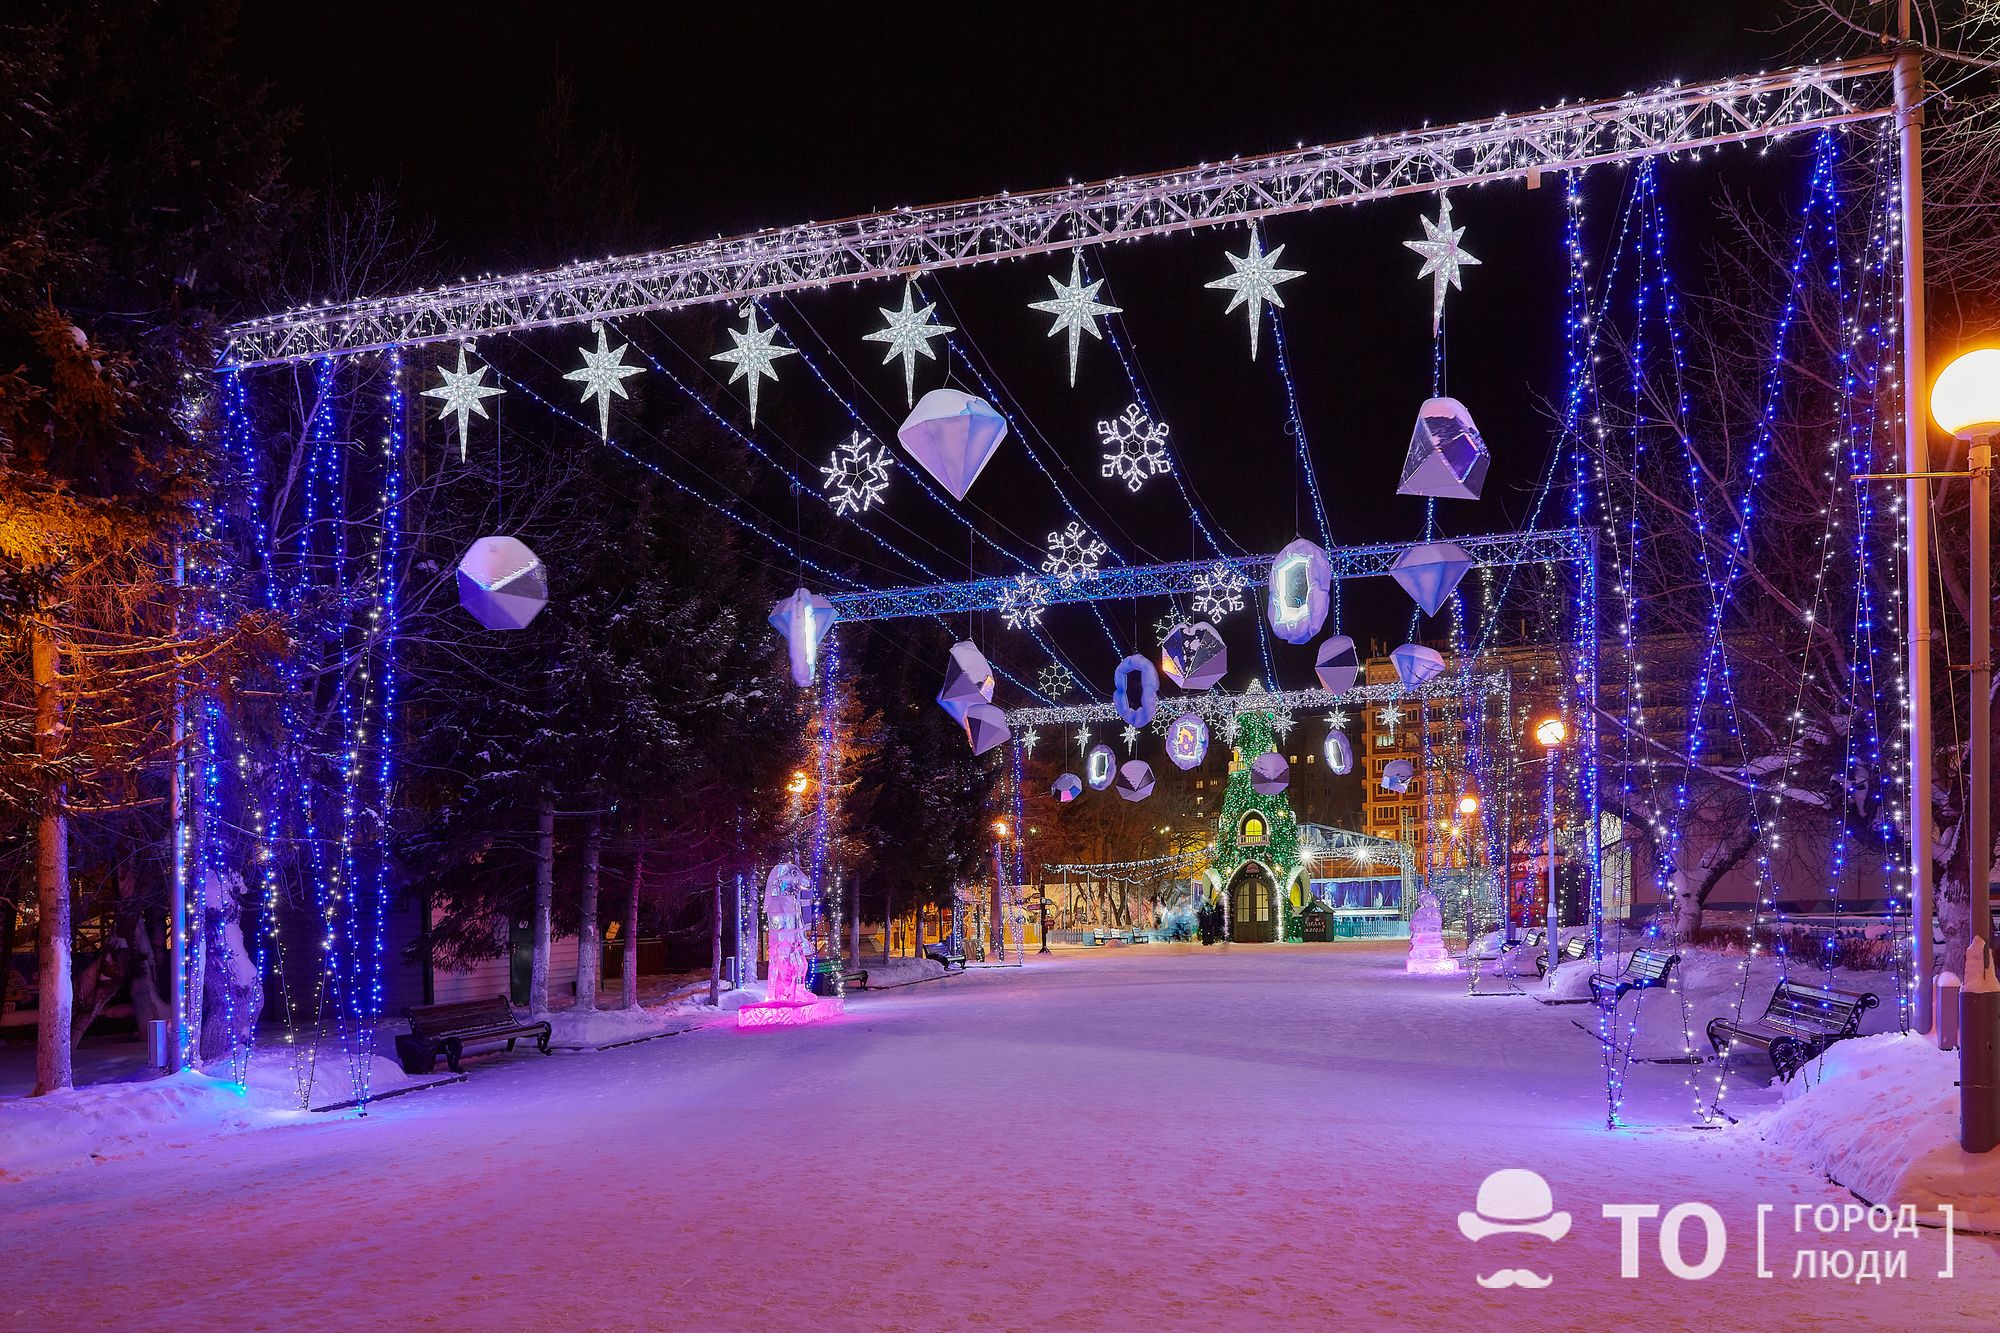 Новый год ❄, Томские новости, новый год дед мороз праздники иллюминация зажгли елку включили подсветку Через две недели в Томске включат праздничную иллюминацию